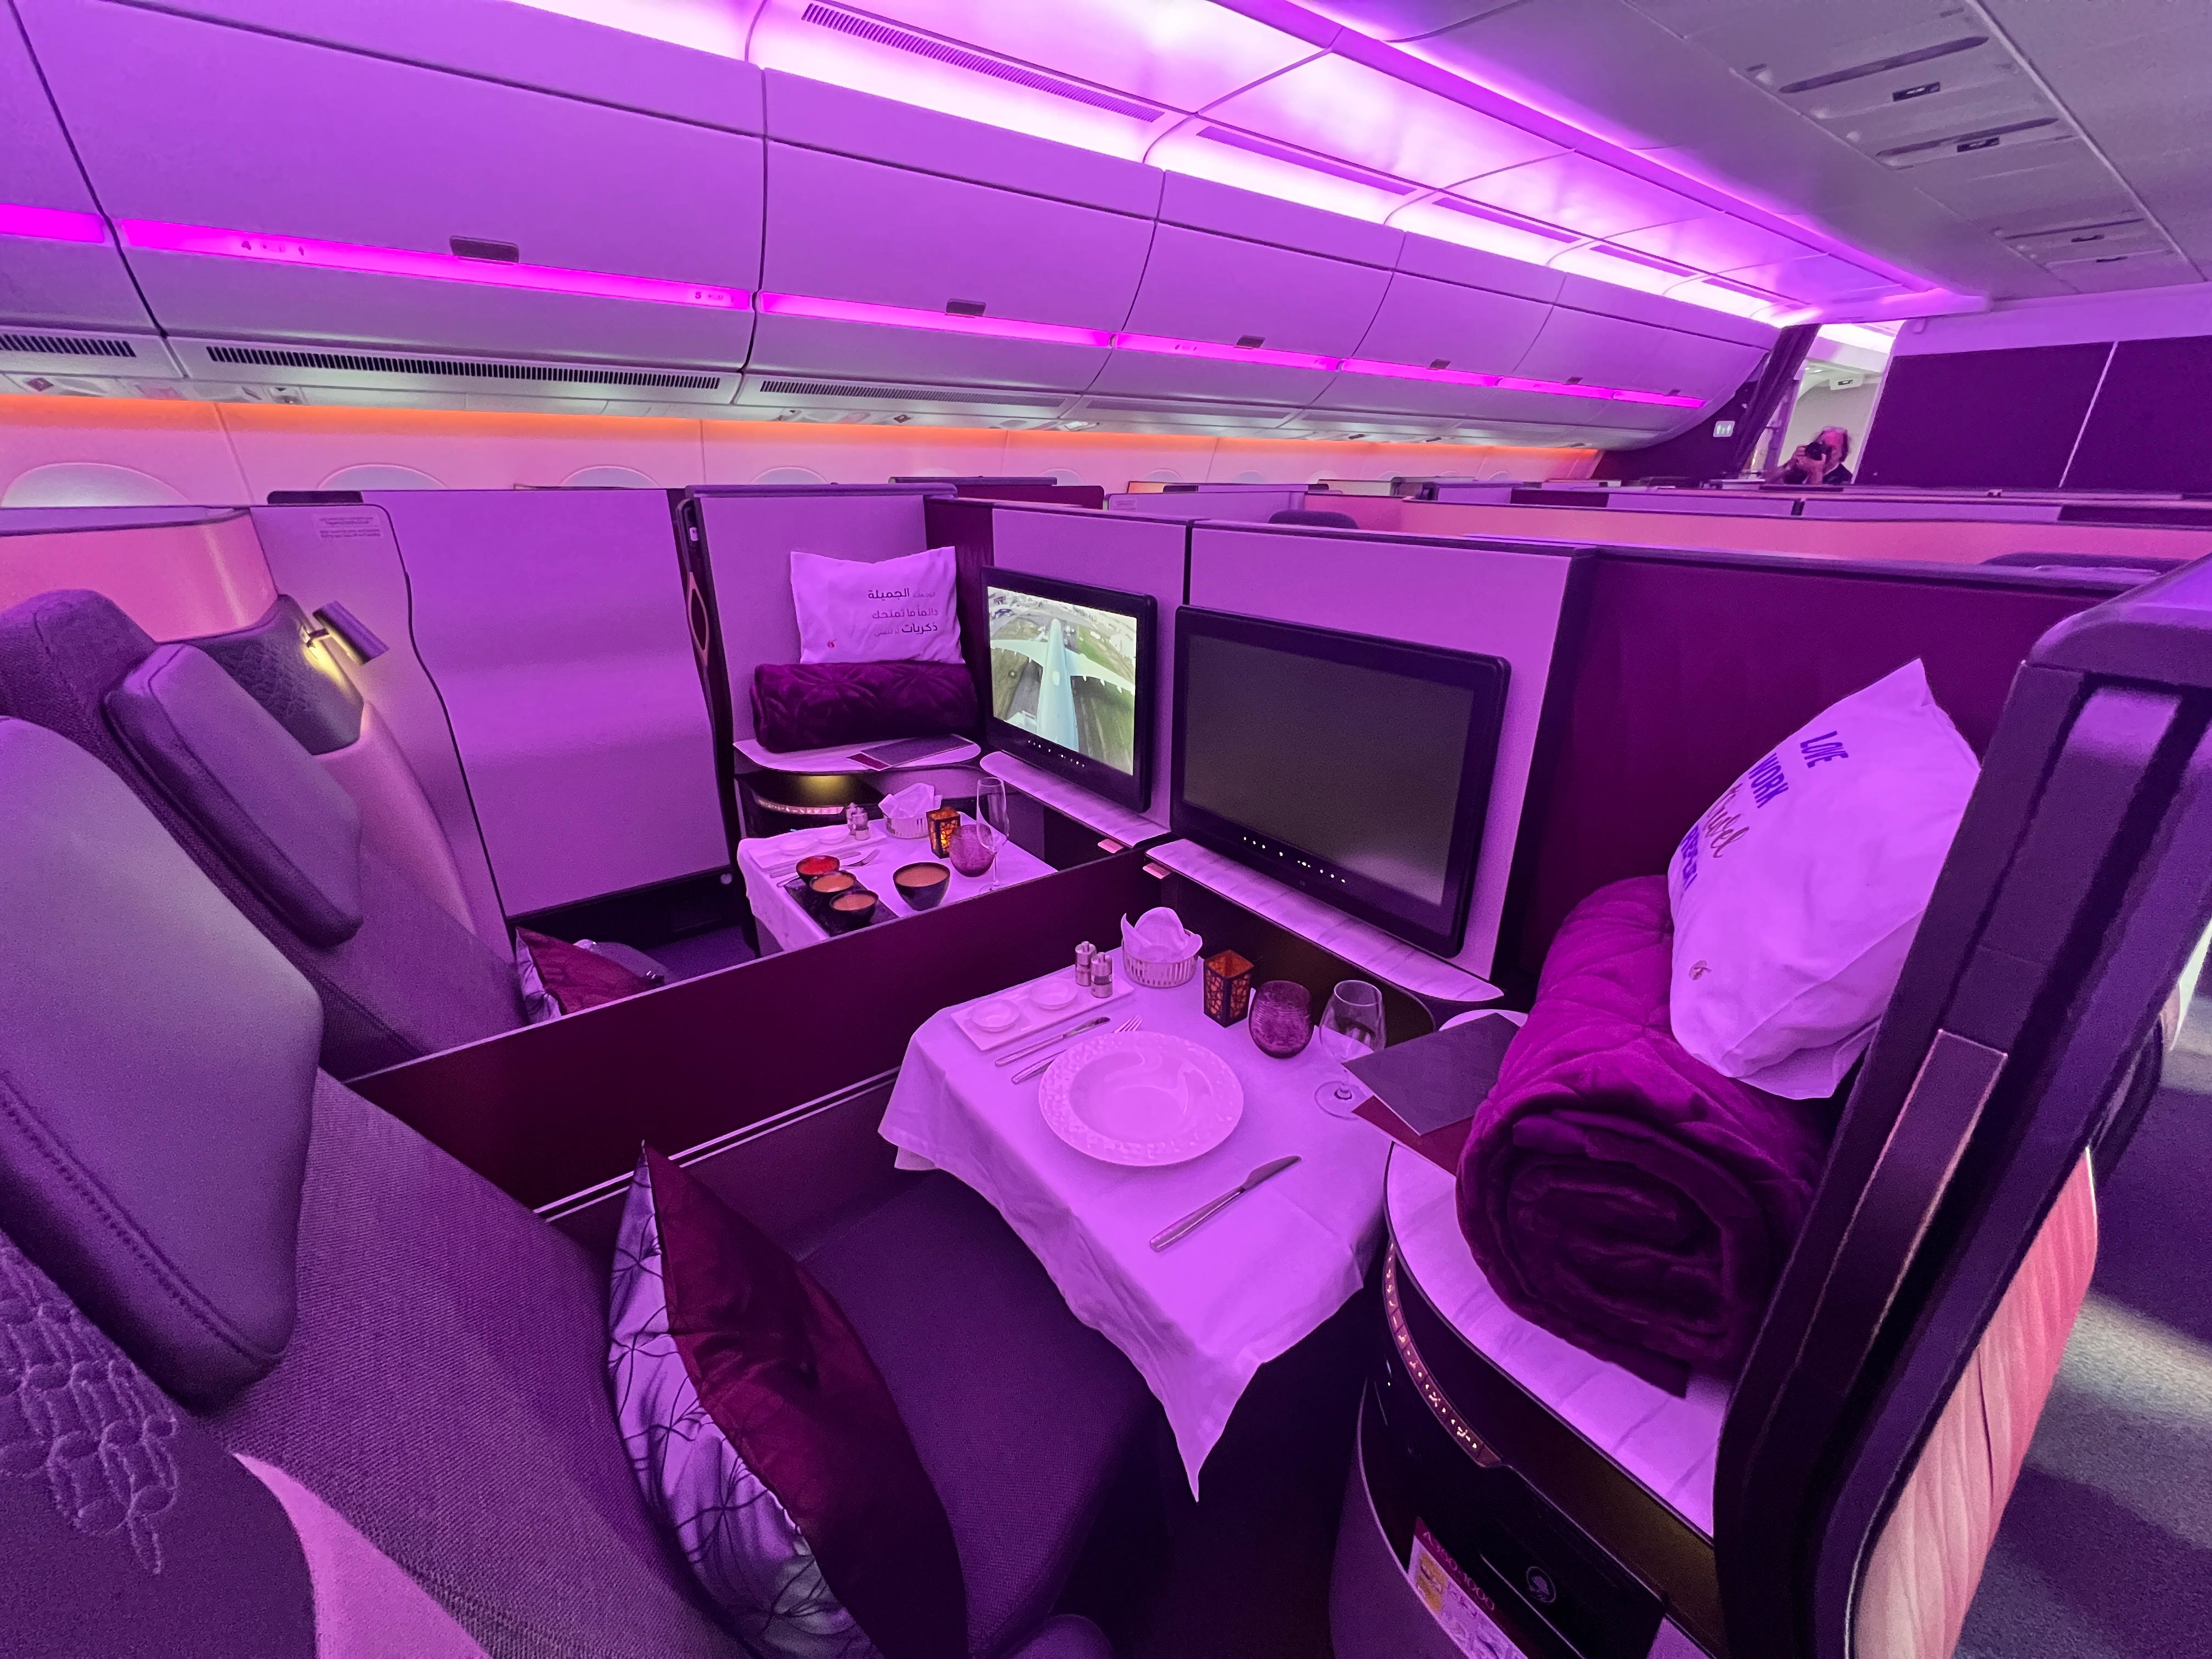 Ein Blick auf zwei nebeneinander liegende Business-Class-Sitze von Qatar Airways mit violettem Farbton und bereitgelegtem Geschirr.